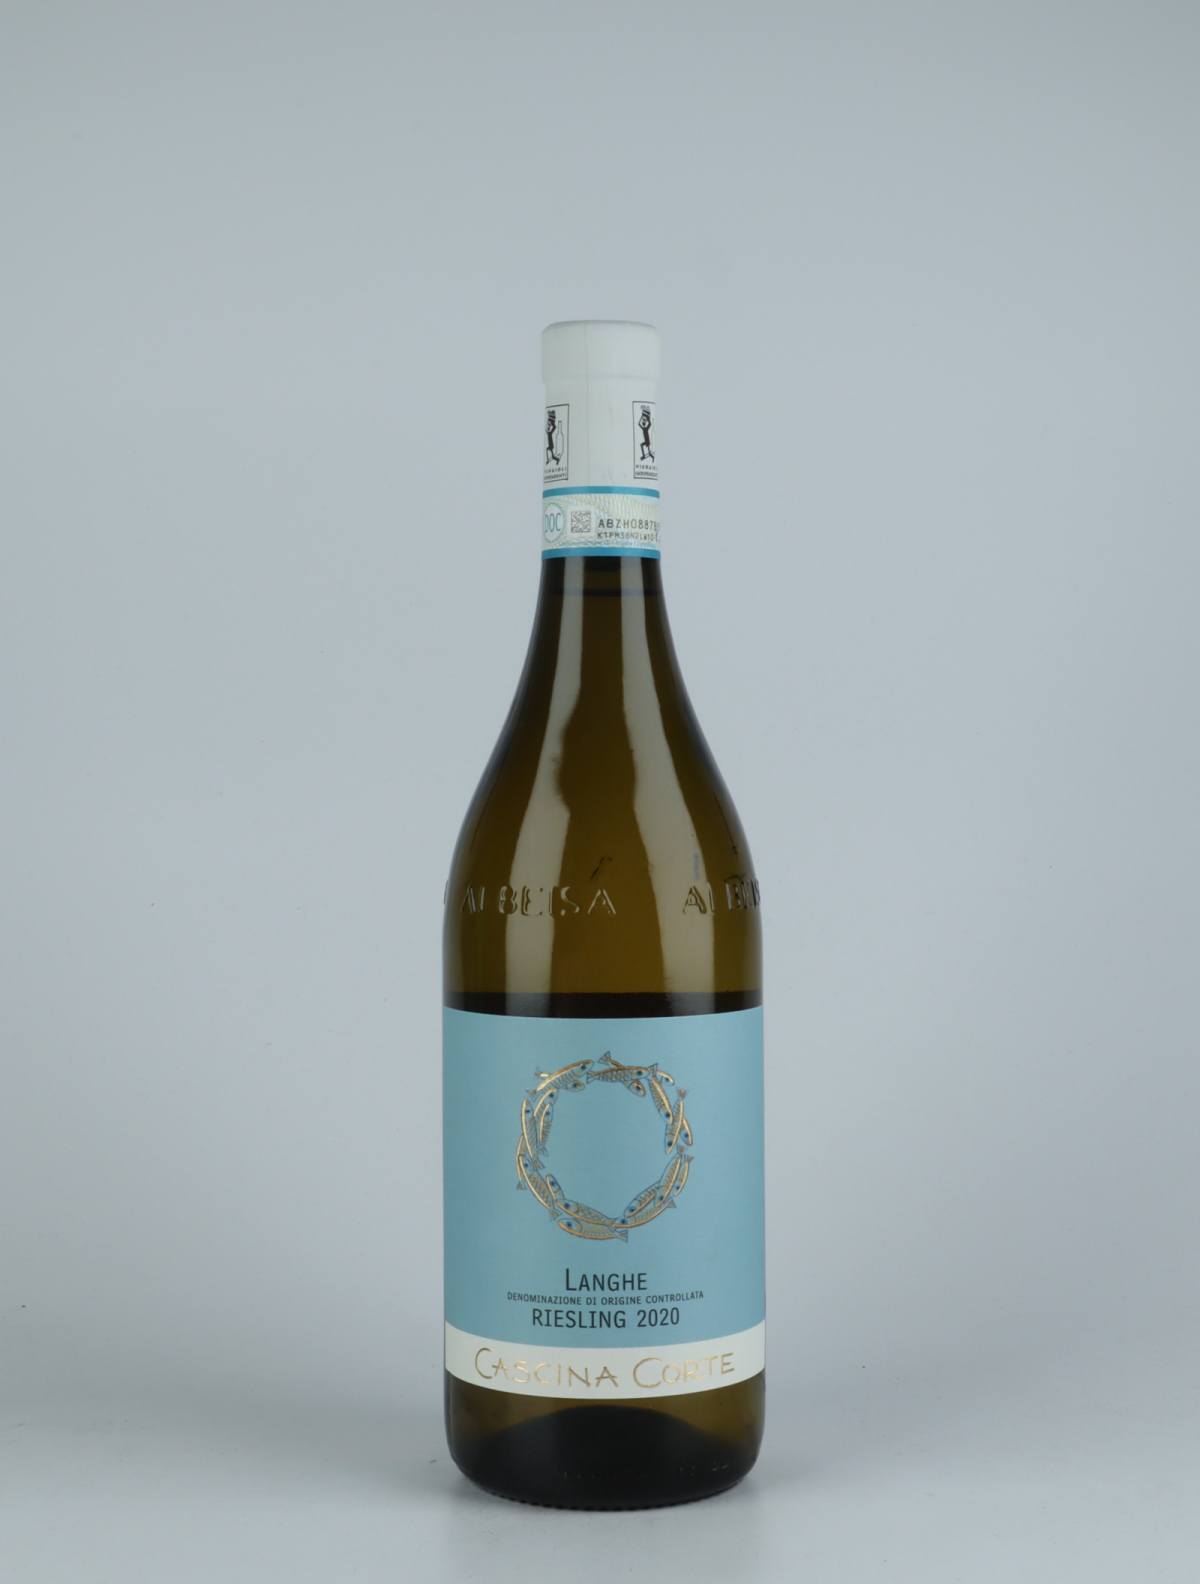 En flaske 2020 Langhe Riesling Hvidvin fra Cascina Corte, Piemonte i Italien